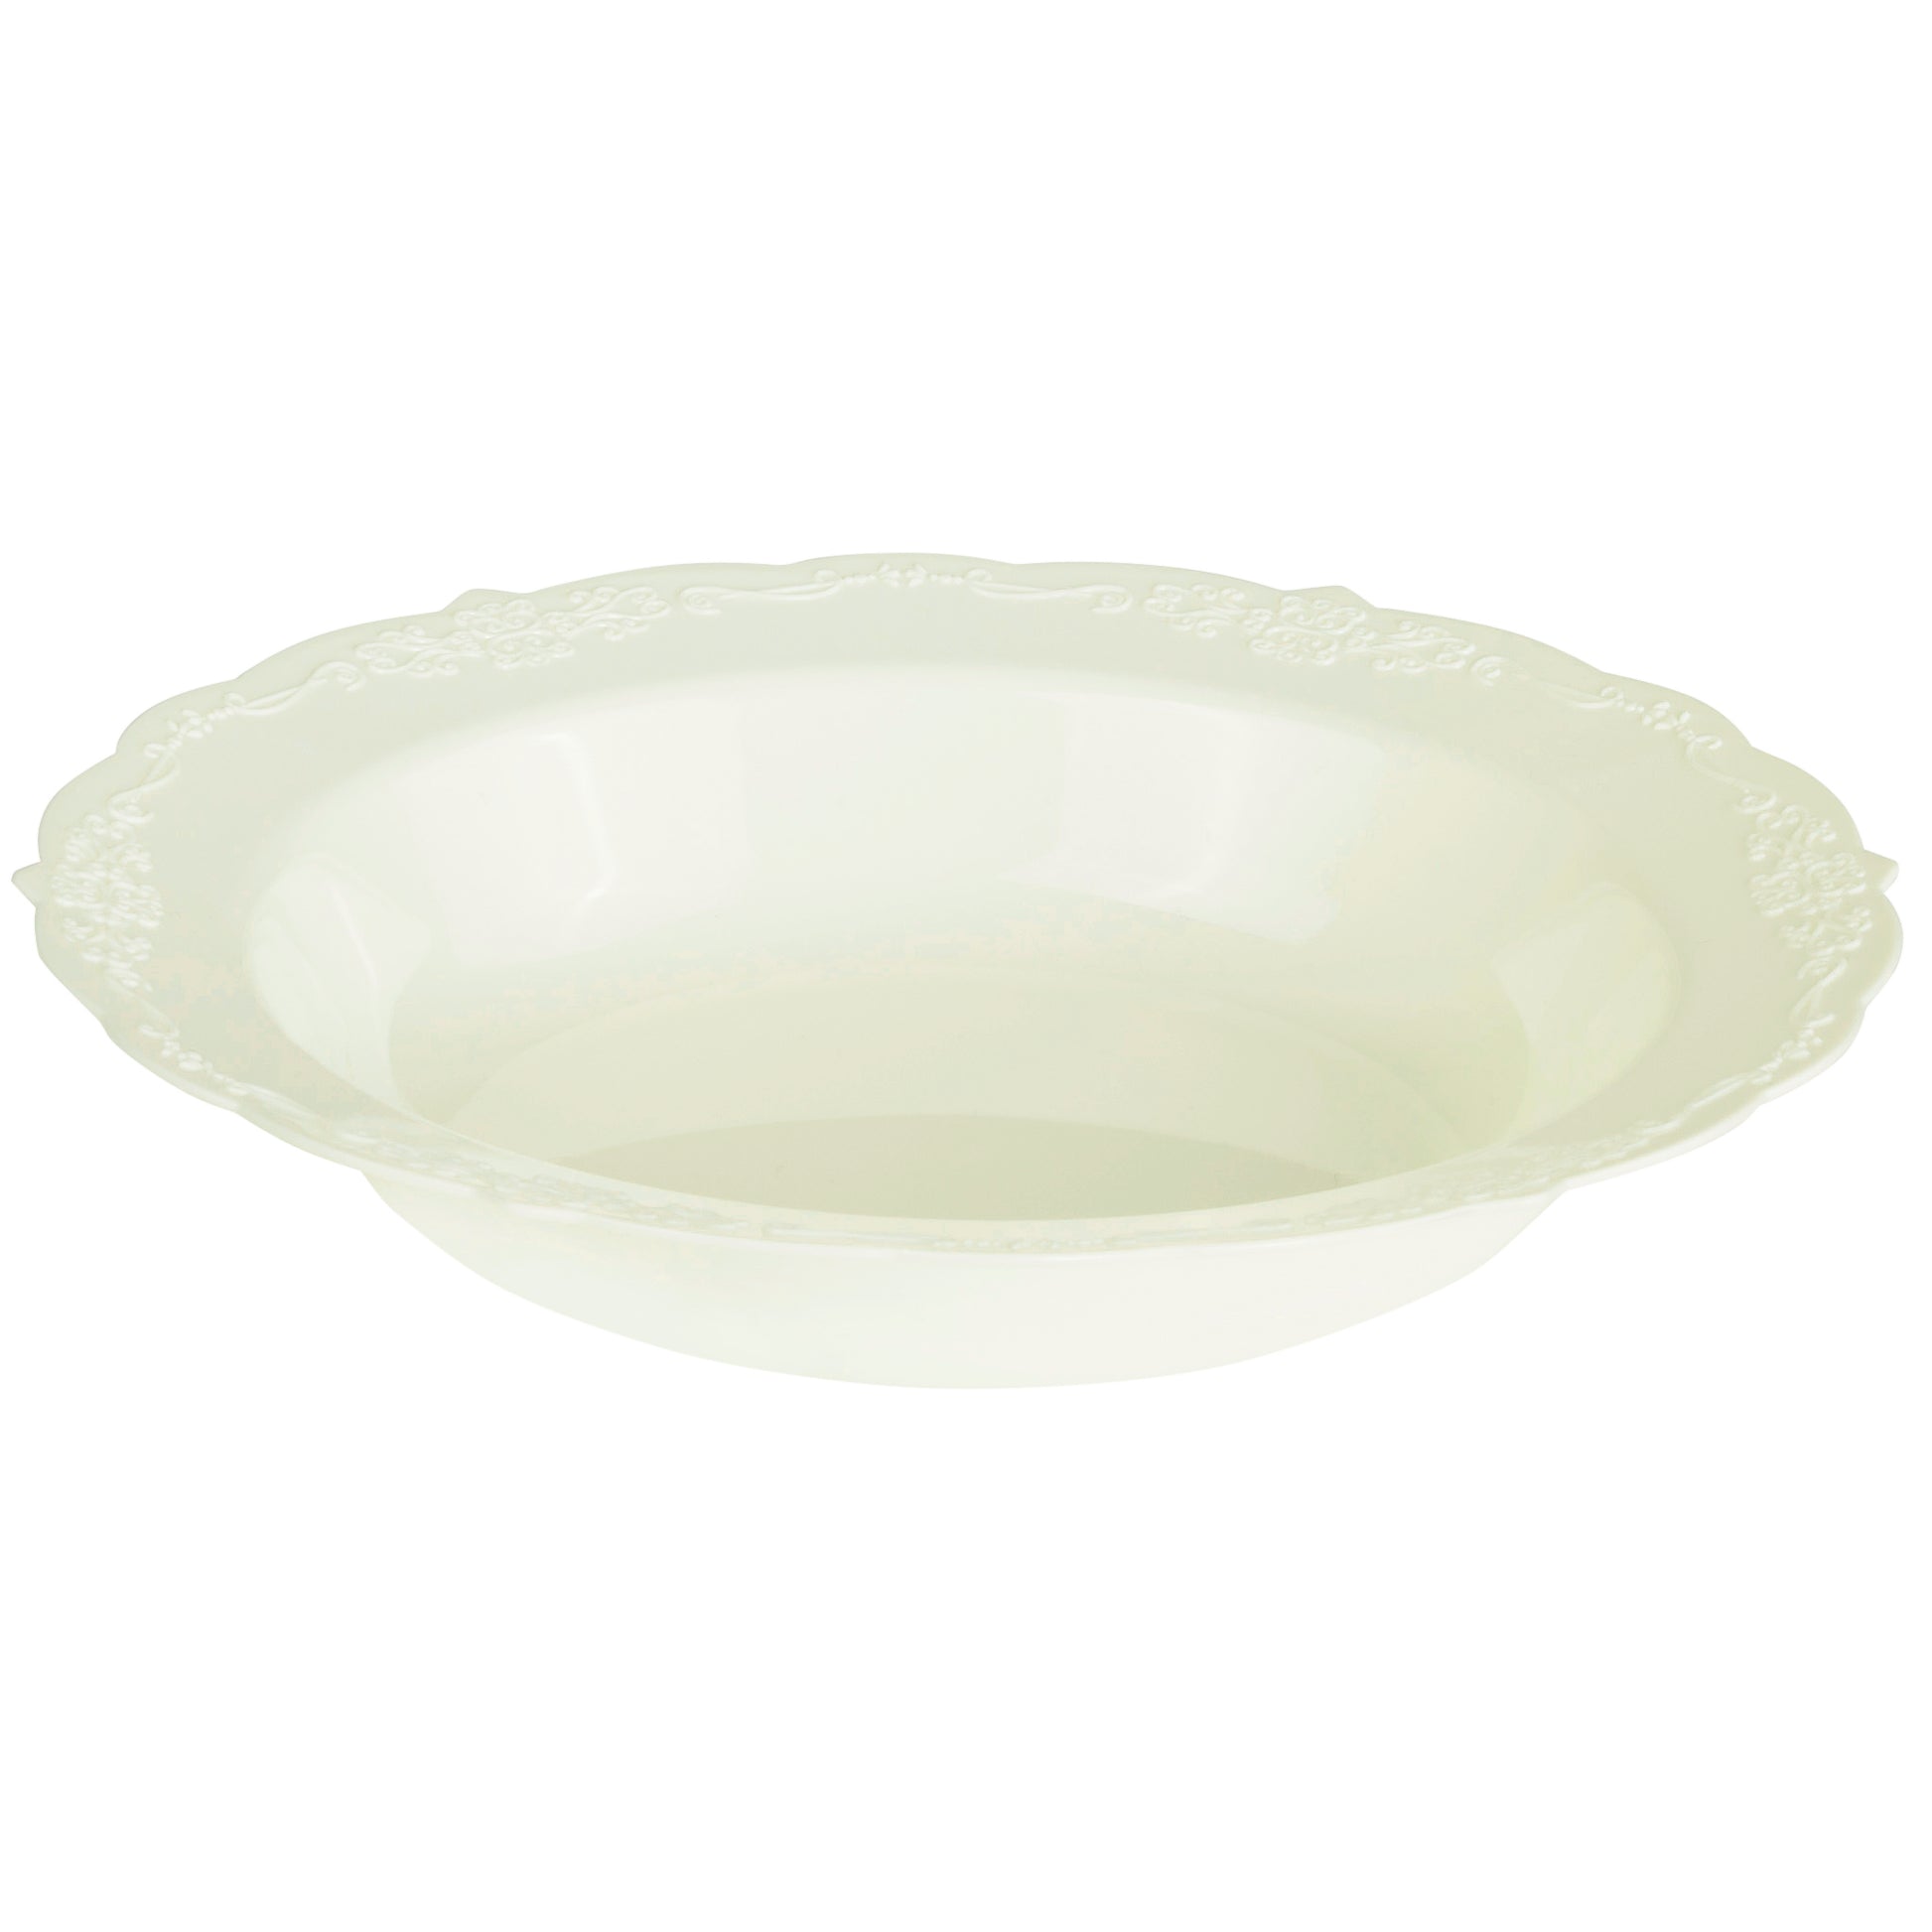 Embossed Vintage Plastic Soup Bowl 7.5" (10/pack) - Ivory - CV Linens